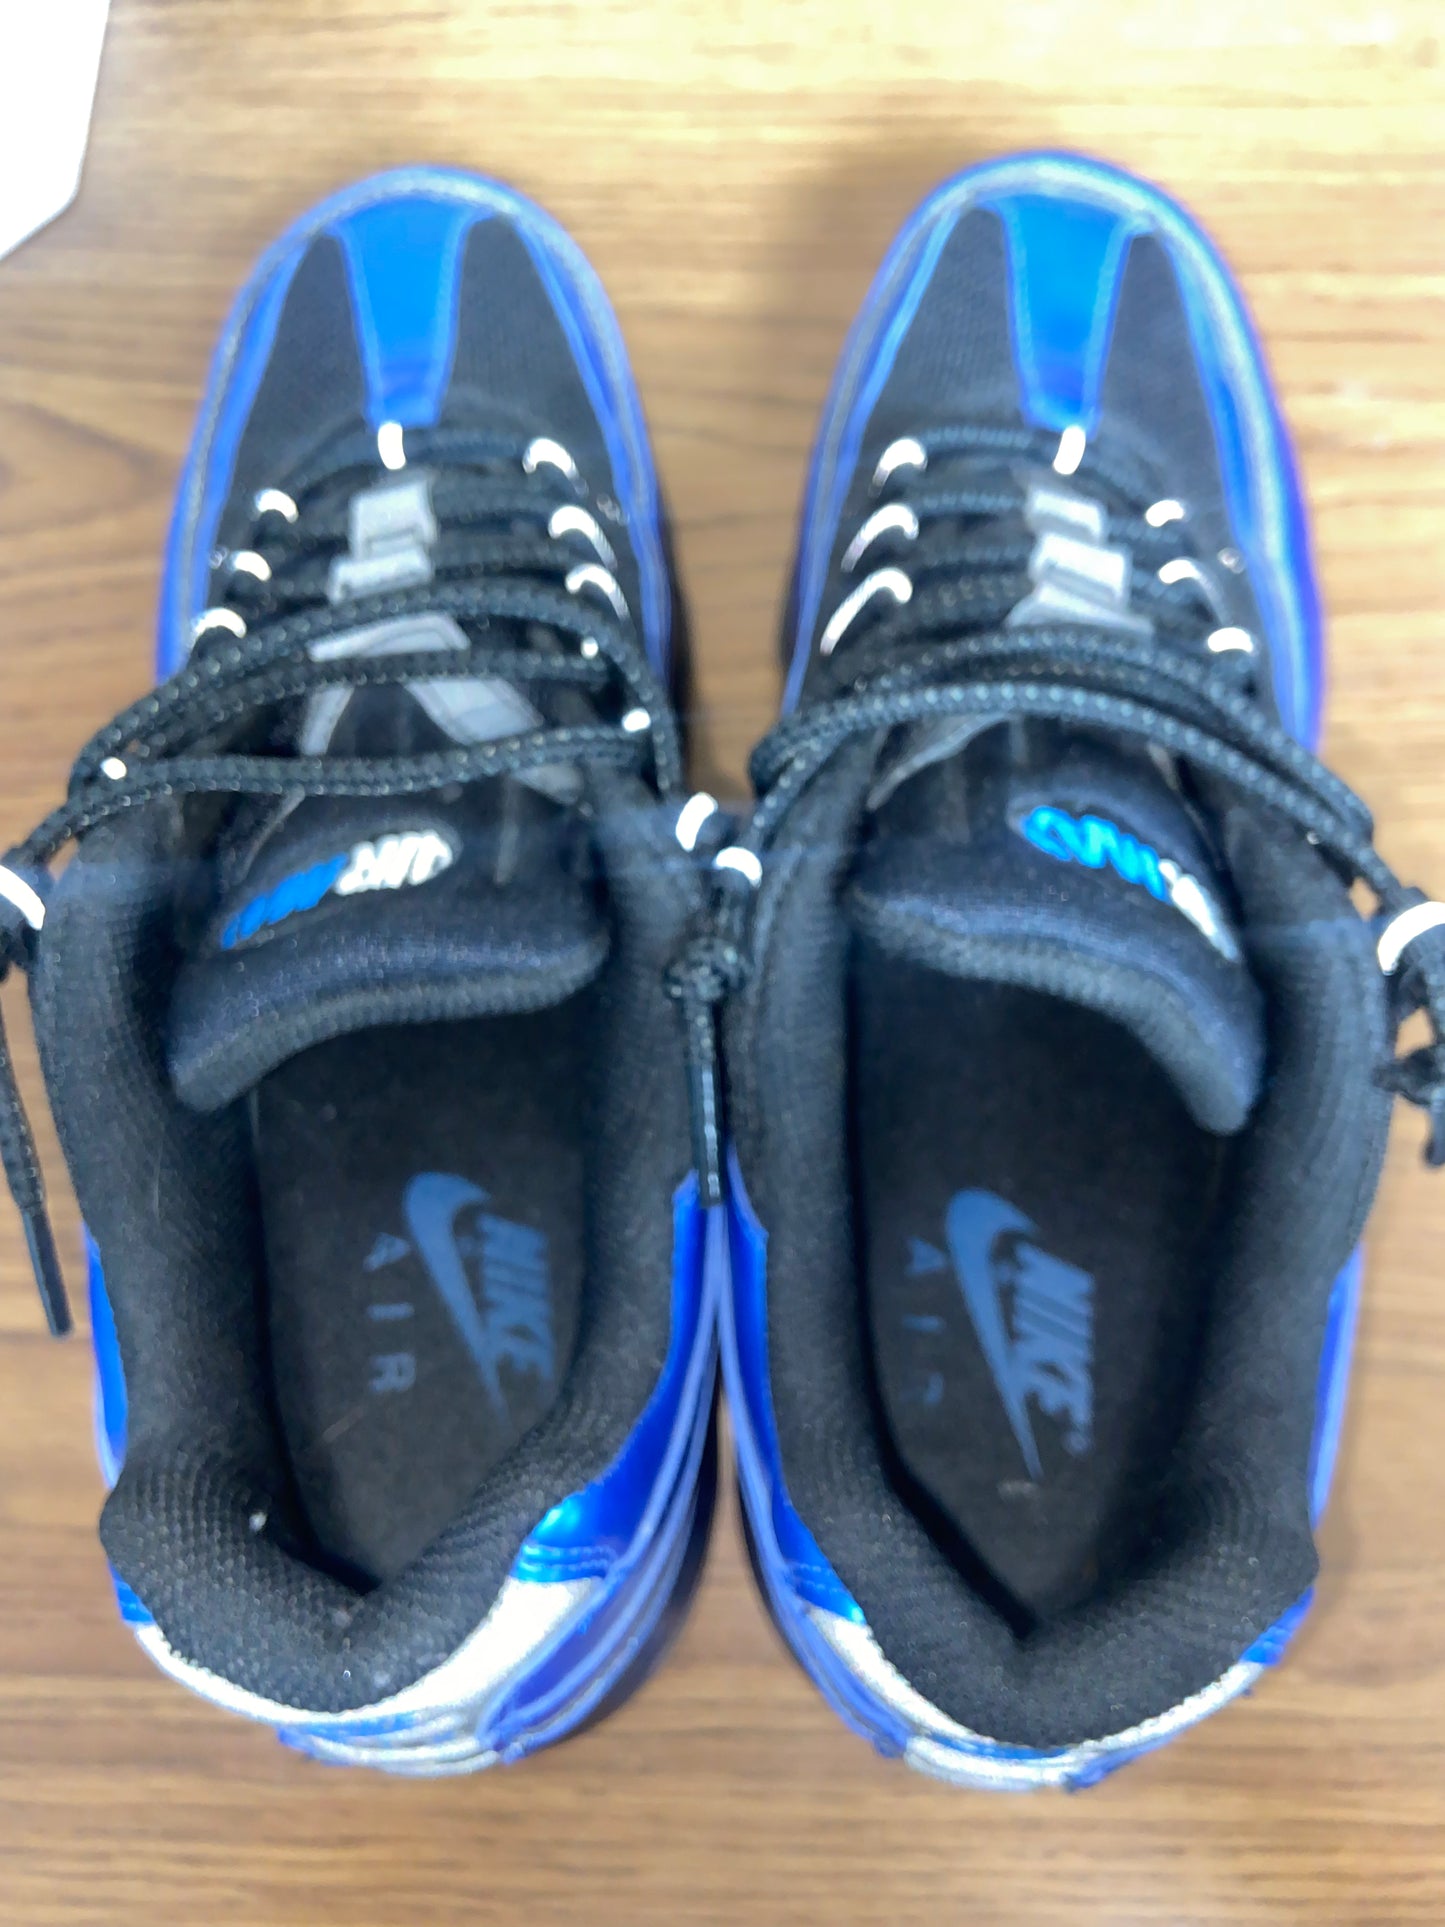 Nike Air Max 24-7 Black/Blue Spark White (Size 8.5)